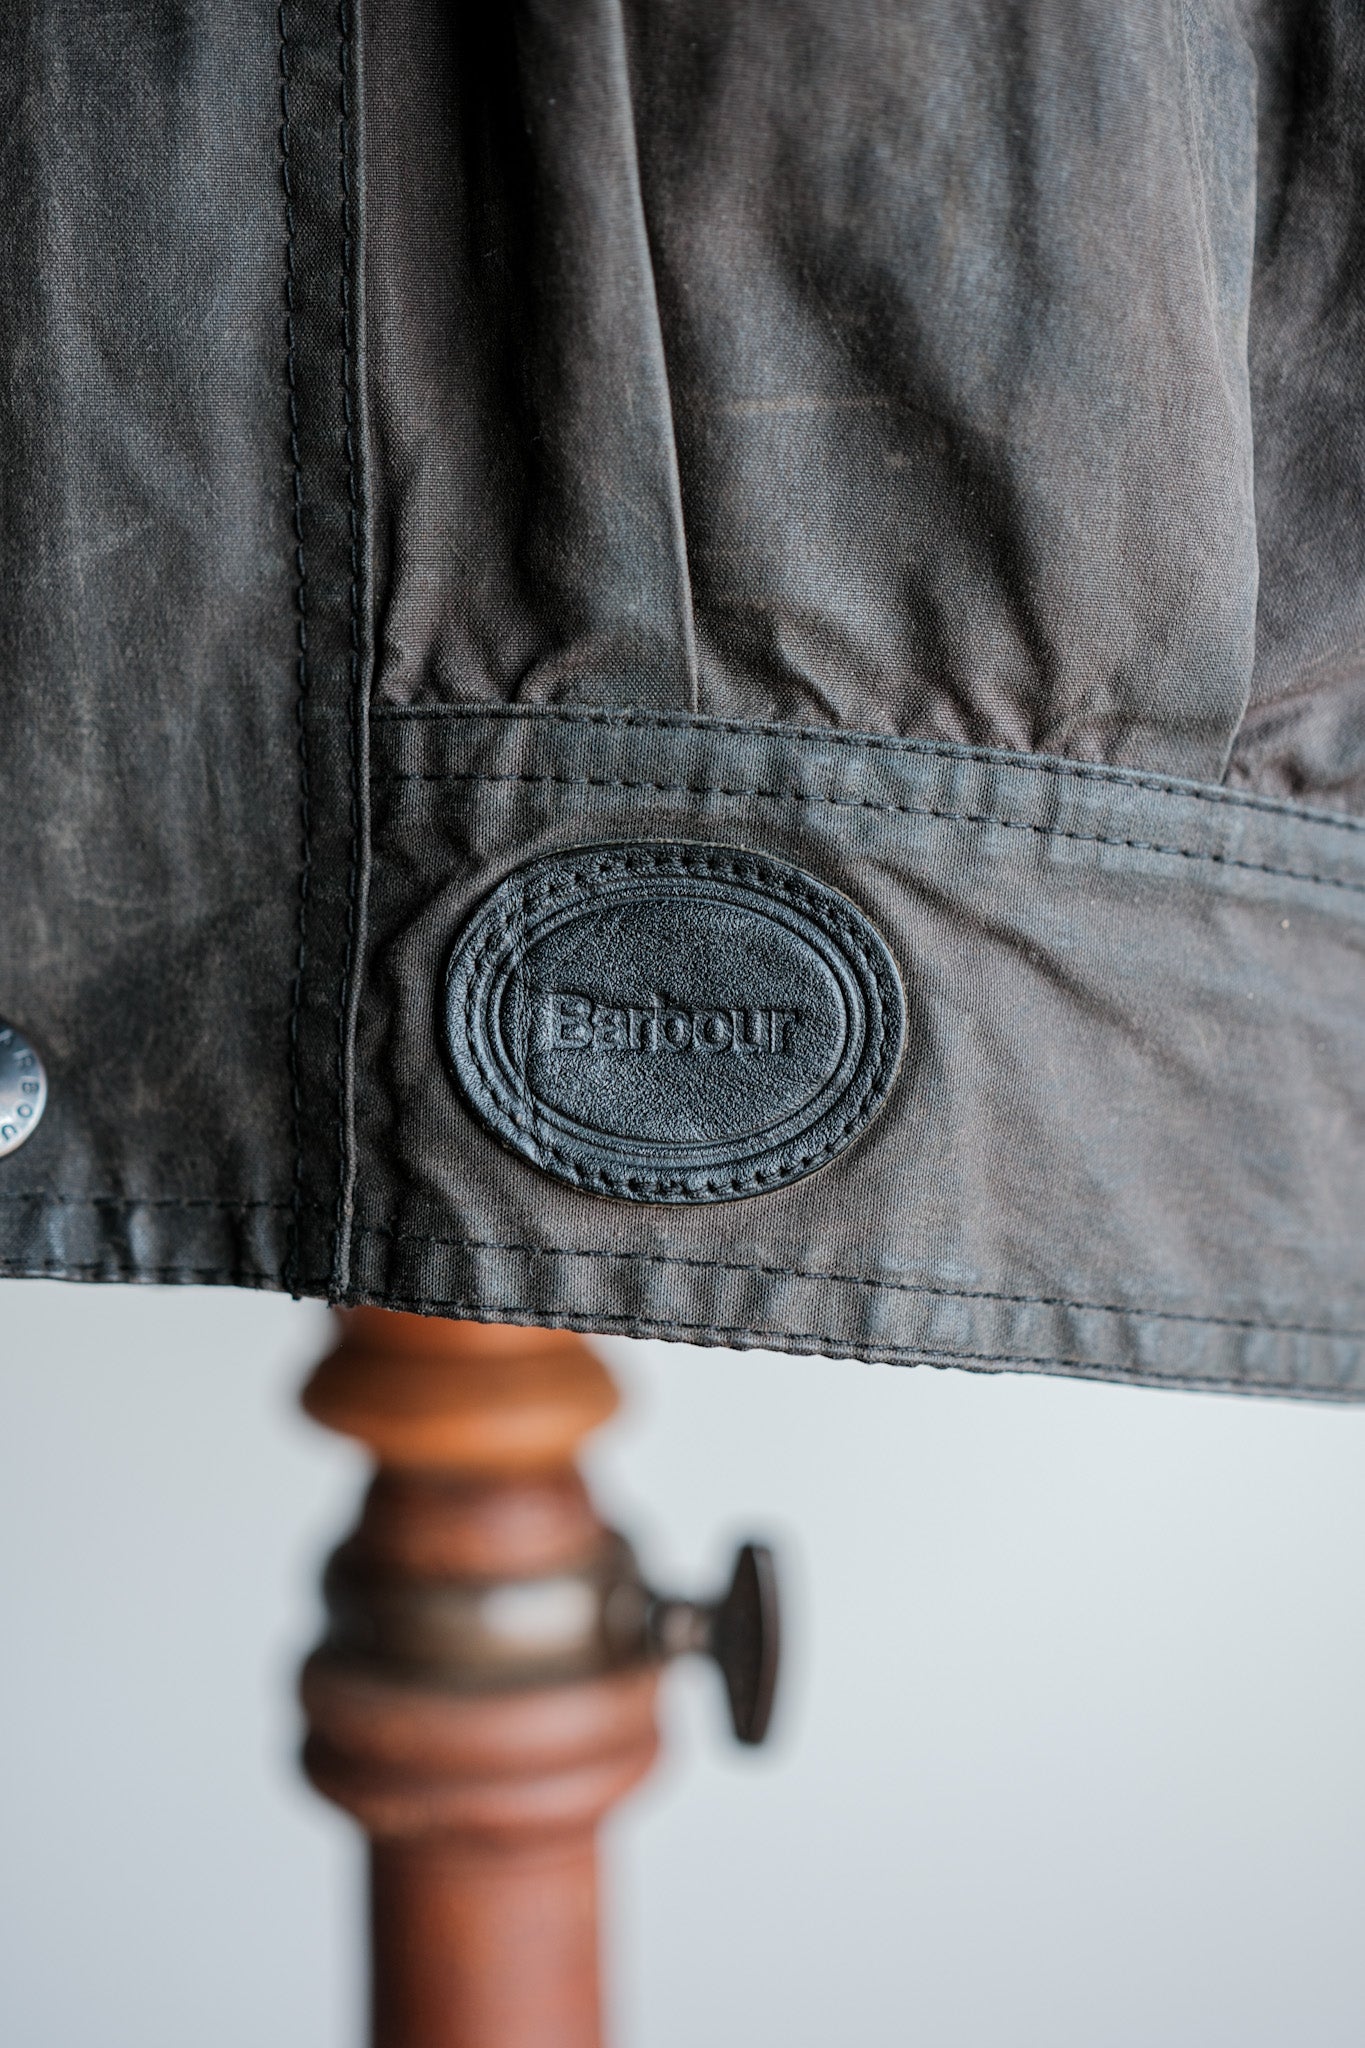 [~ 90's] Barbour vintage "Coton de cire Blouson" 3 Crest Taille.large